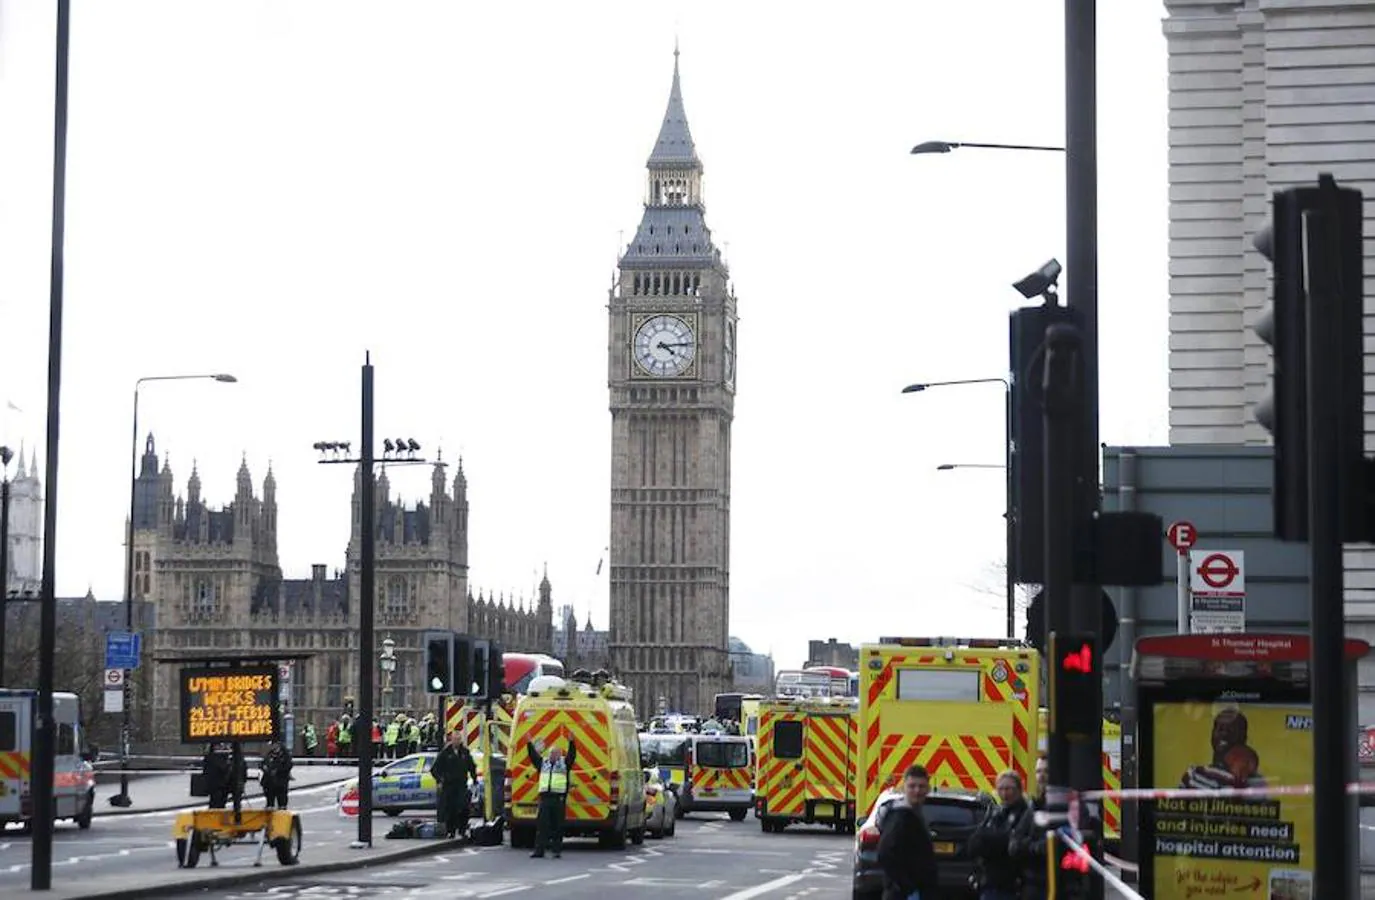 Imágenes tras el ataque en el centro de Londres